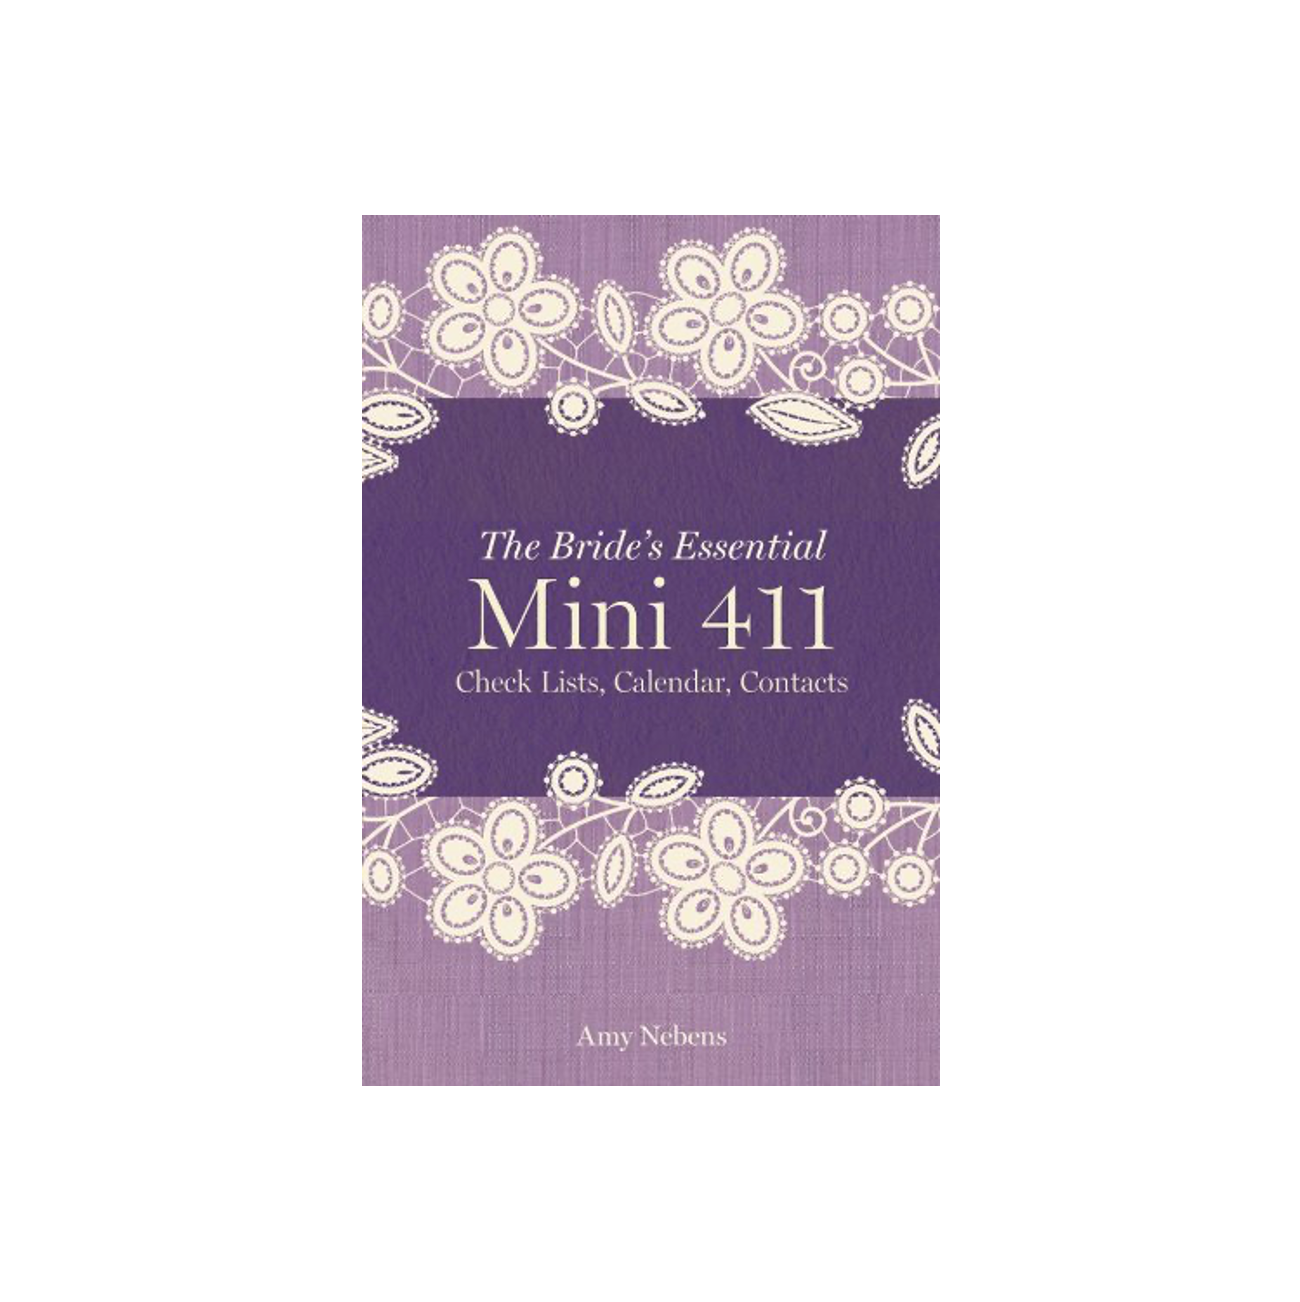 The Bride's Essential Mini 411 Book